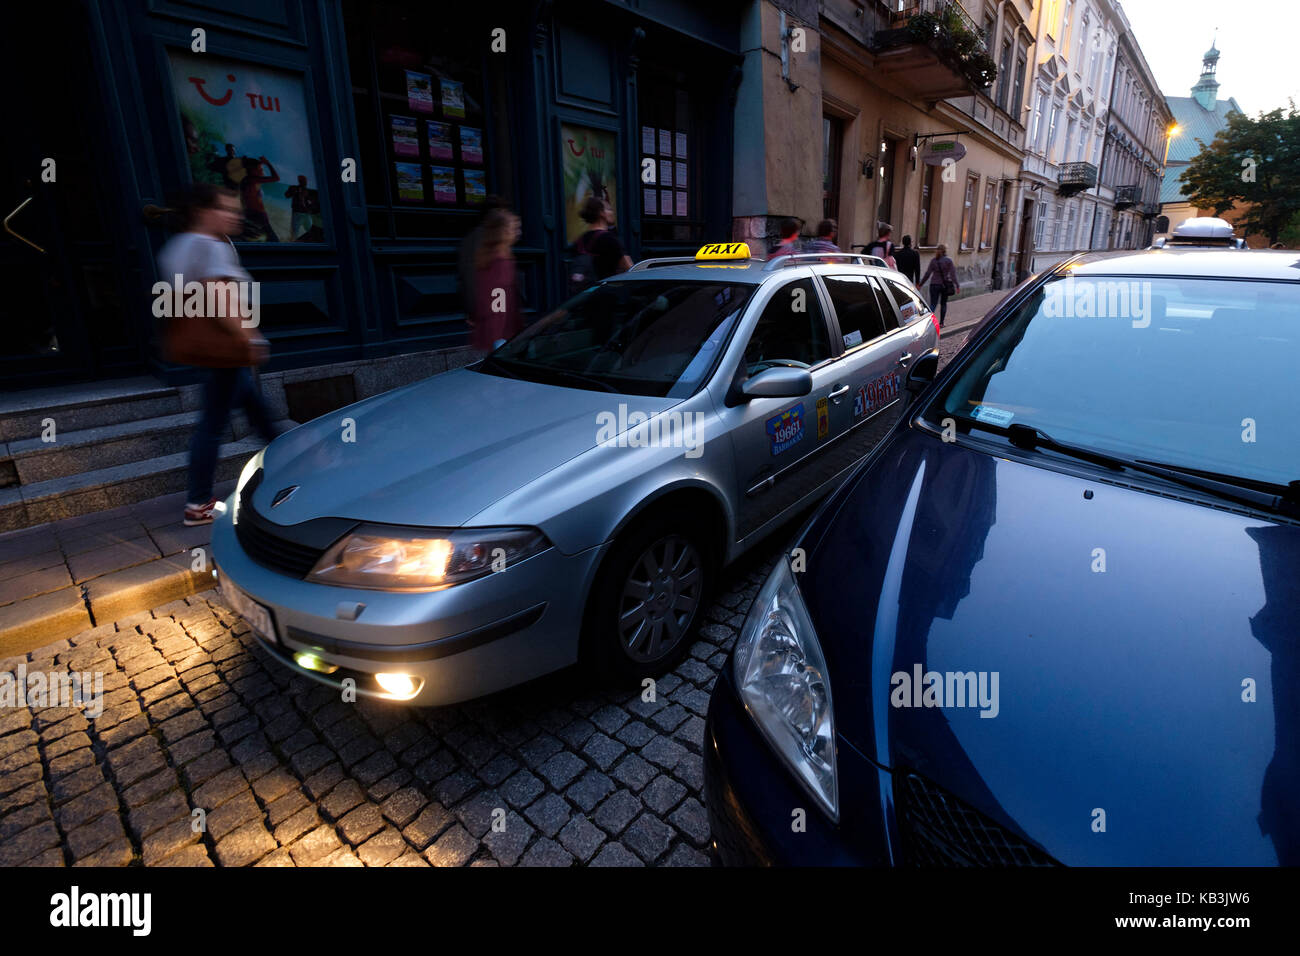 Taxi cab in Krakow, Poland, Europe Stock Photo